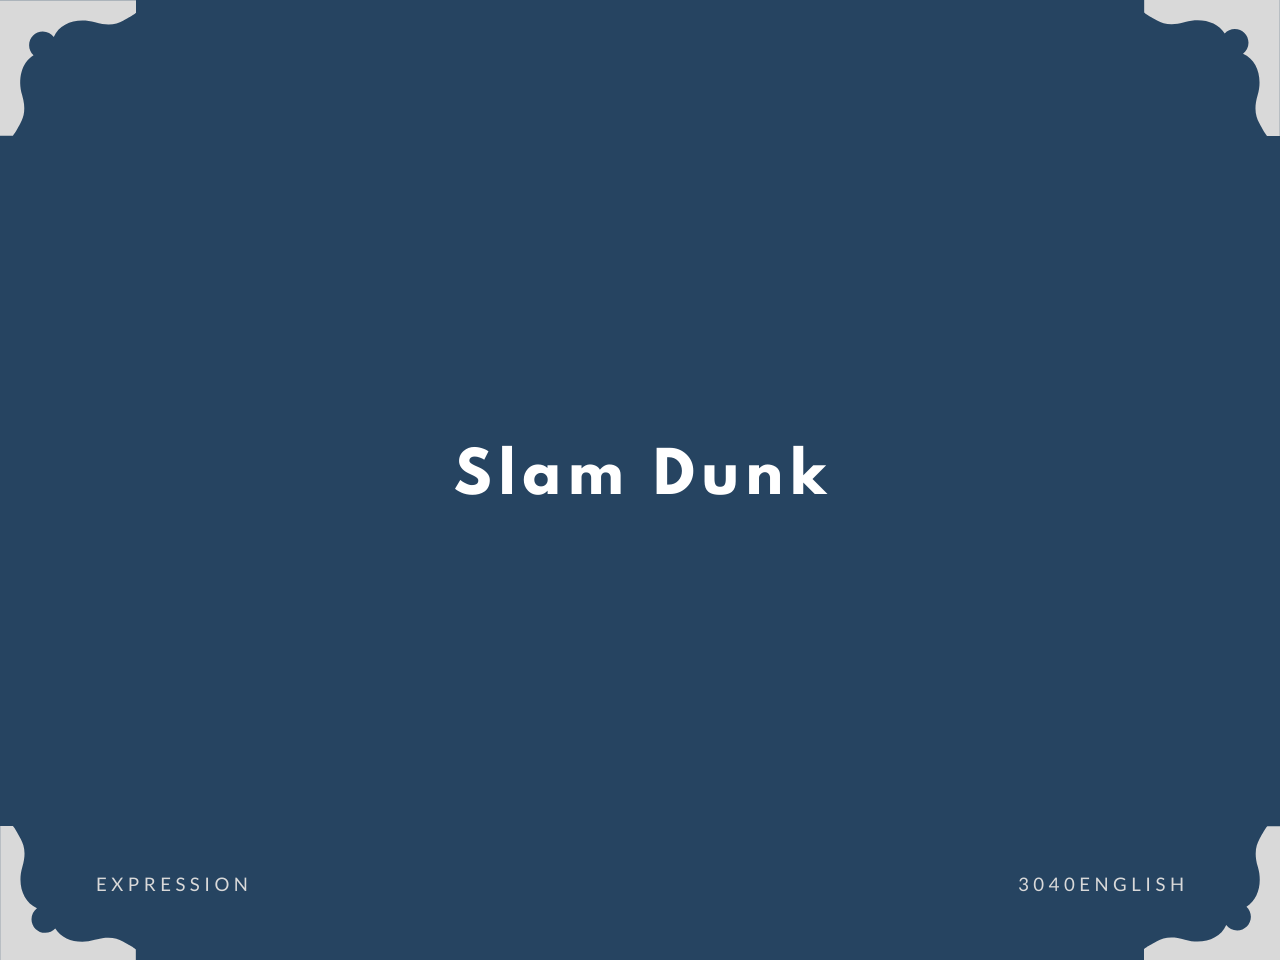 スラムダンクだけじゃない Slam Dunk Slam Dunk の意味と使い方 英語表現 例文あり 30代40代で身につける英会話